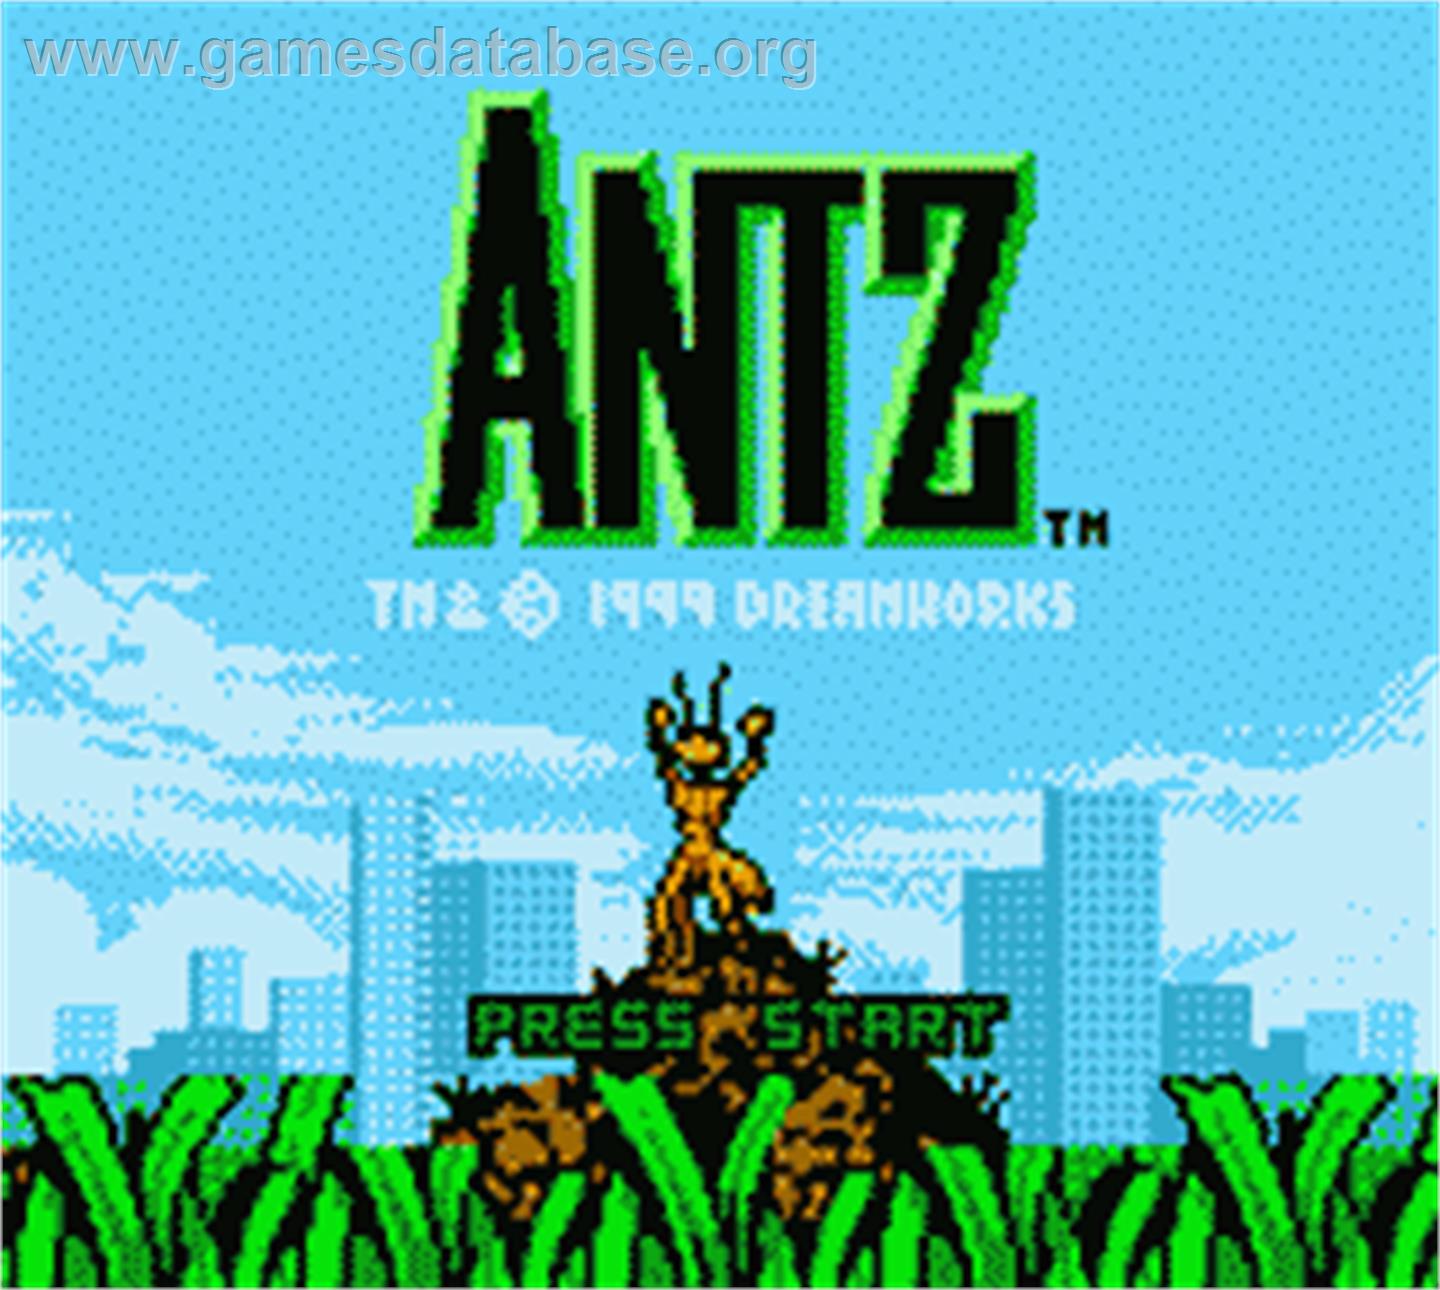 Antz - Nintendo Game Boy Color - Artwork - Title Screen